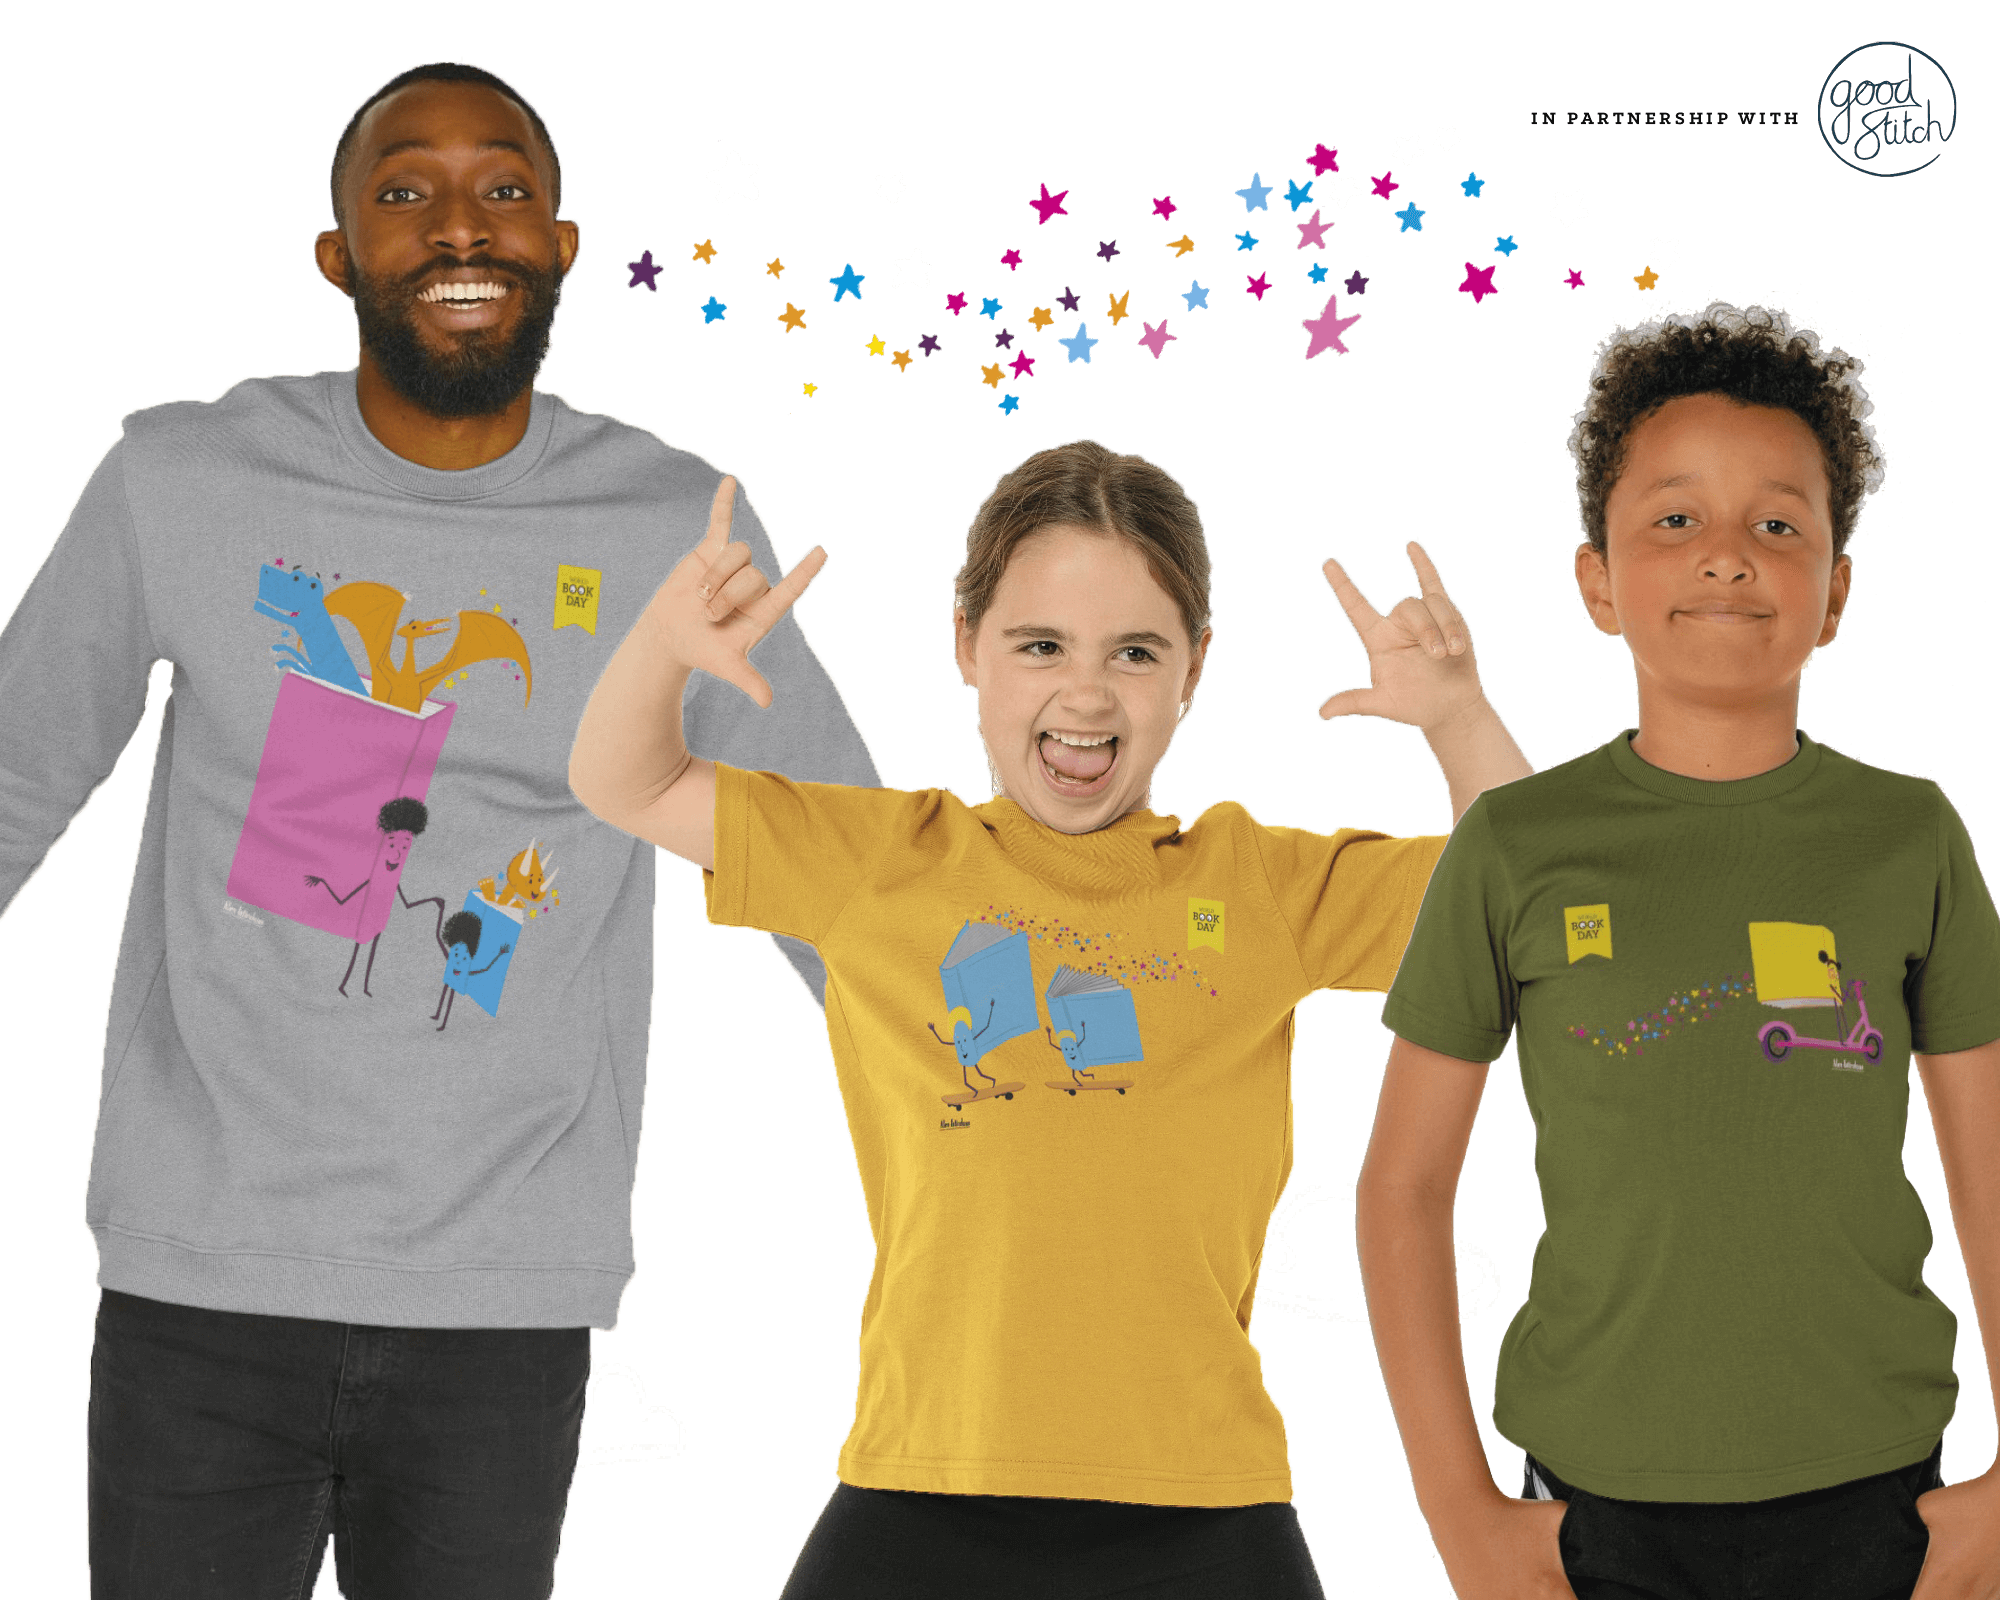 Details about   Dogman t-shirt world book day 2019 t-shirt KIDS  MEN WOMEN T-SHIRT TEE TOP